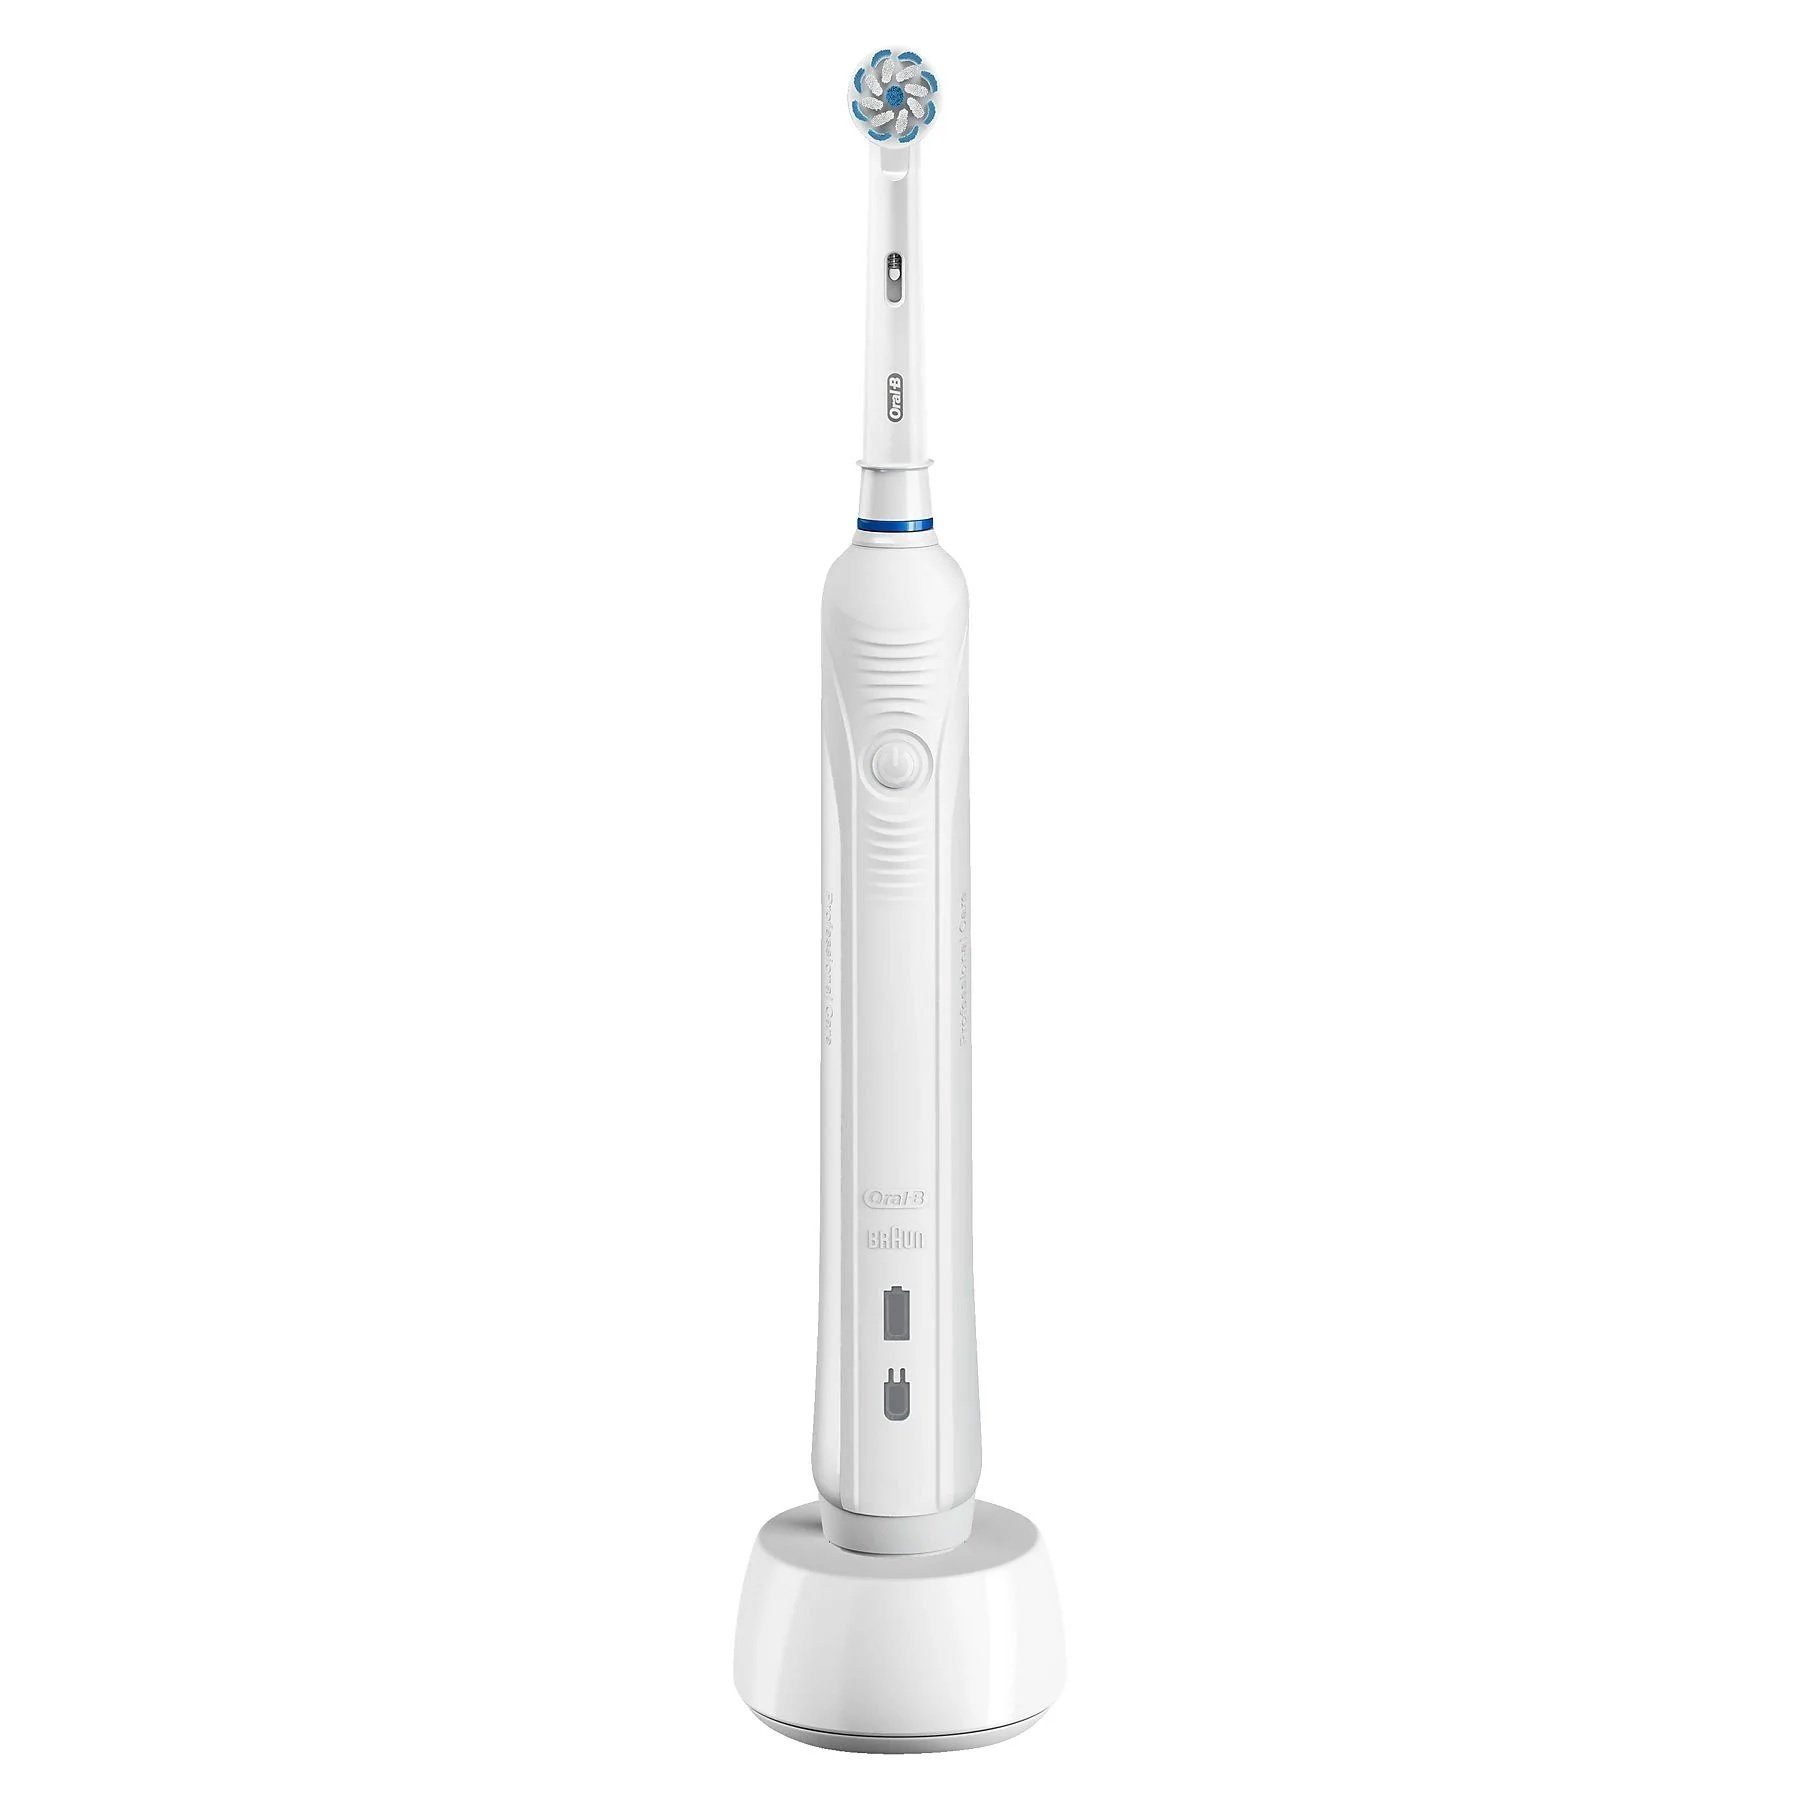 Oral-B Elektrische Zahnbürste sanfte Reinigung, Aufsteckbürsten: 1 St.,  gründliche Zahnreinigung, 3 Putzprogamme, Drucksensor & Timer